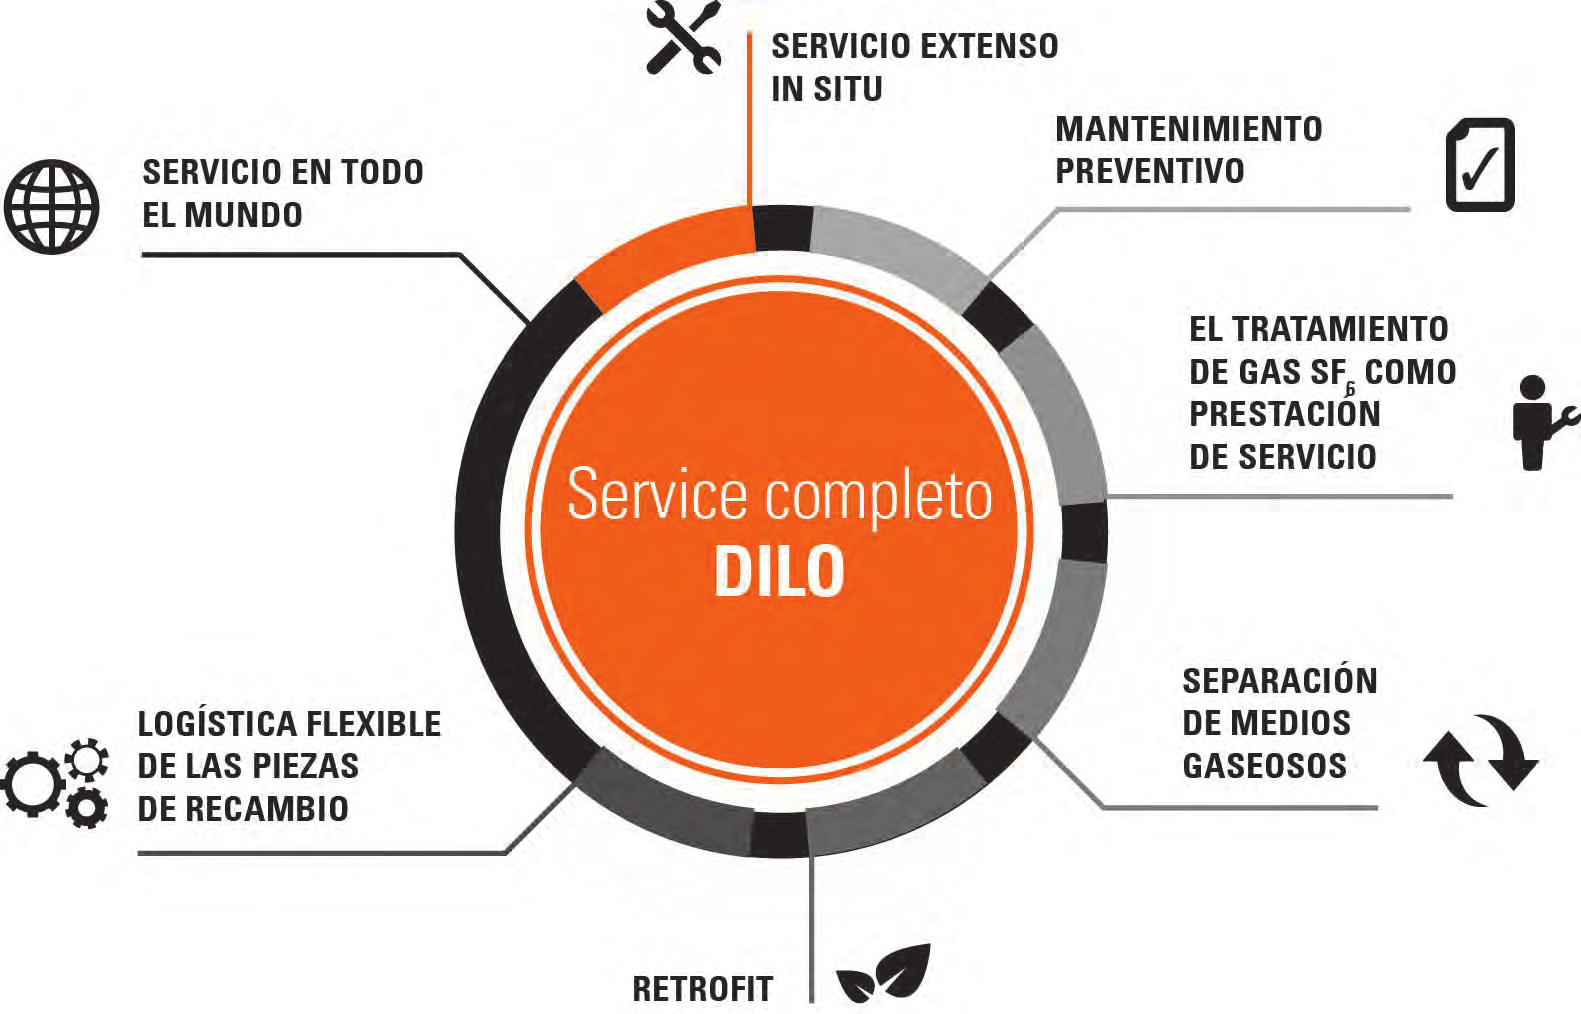 Servicios Le damos la bienvenida a DILO, ya que hemos ampliado nuestros servicios para múltiples productos teniendo en cuenta los requisitos de nuestros clientes, socios de ventas y mercados en todo